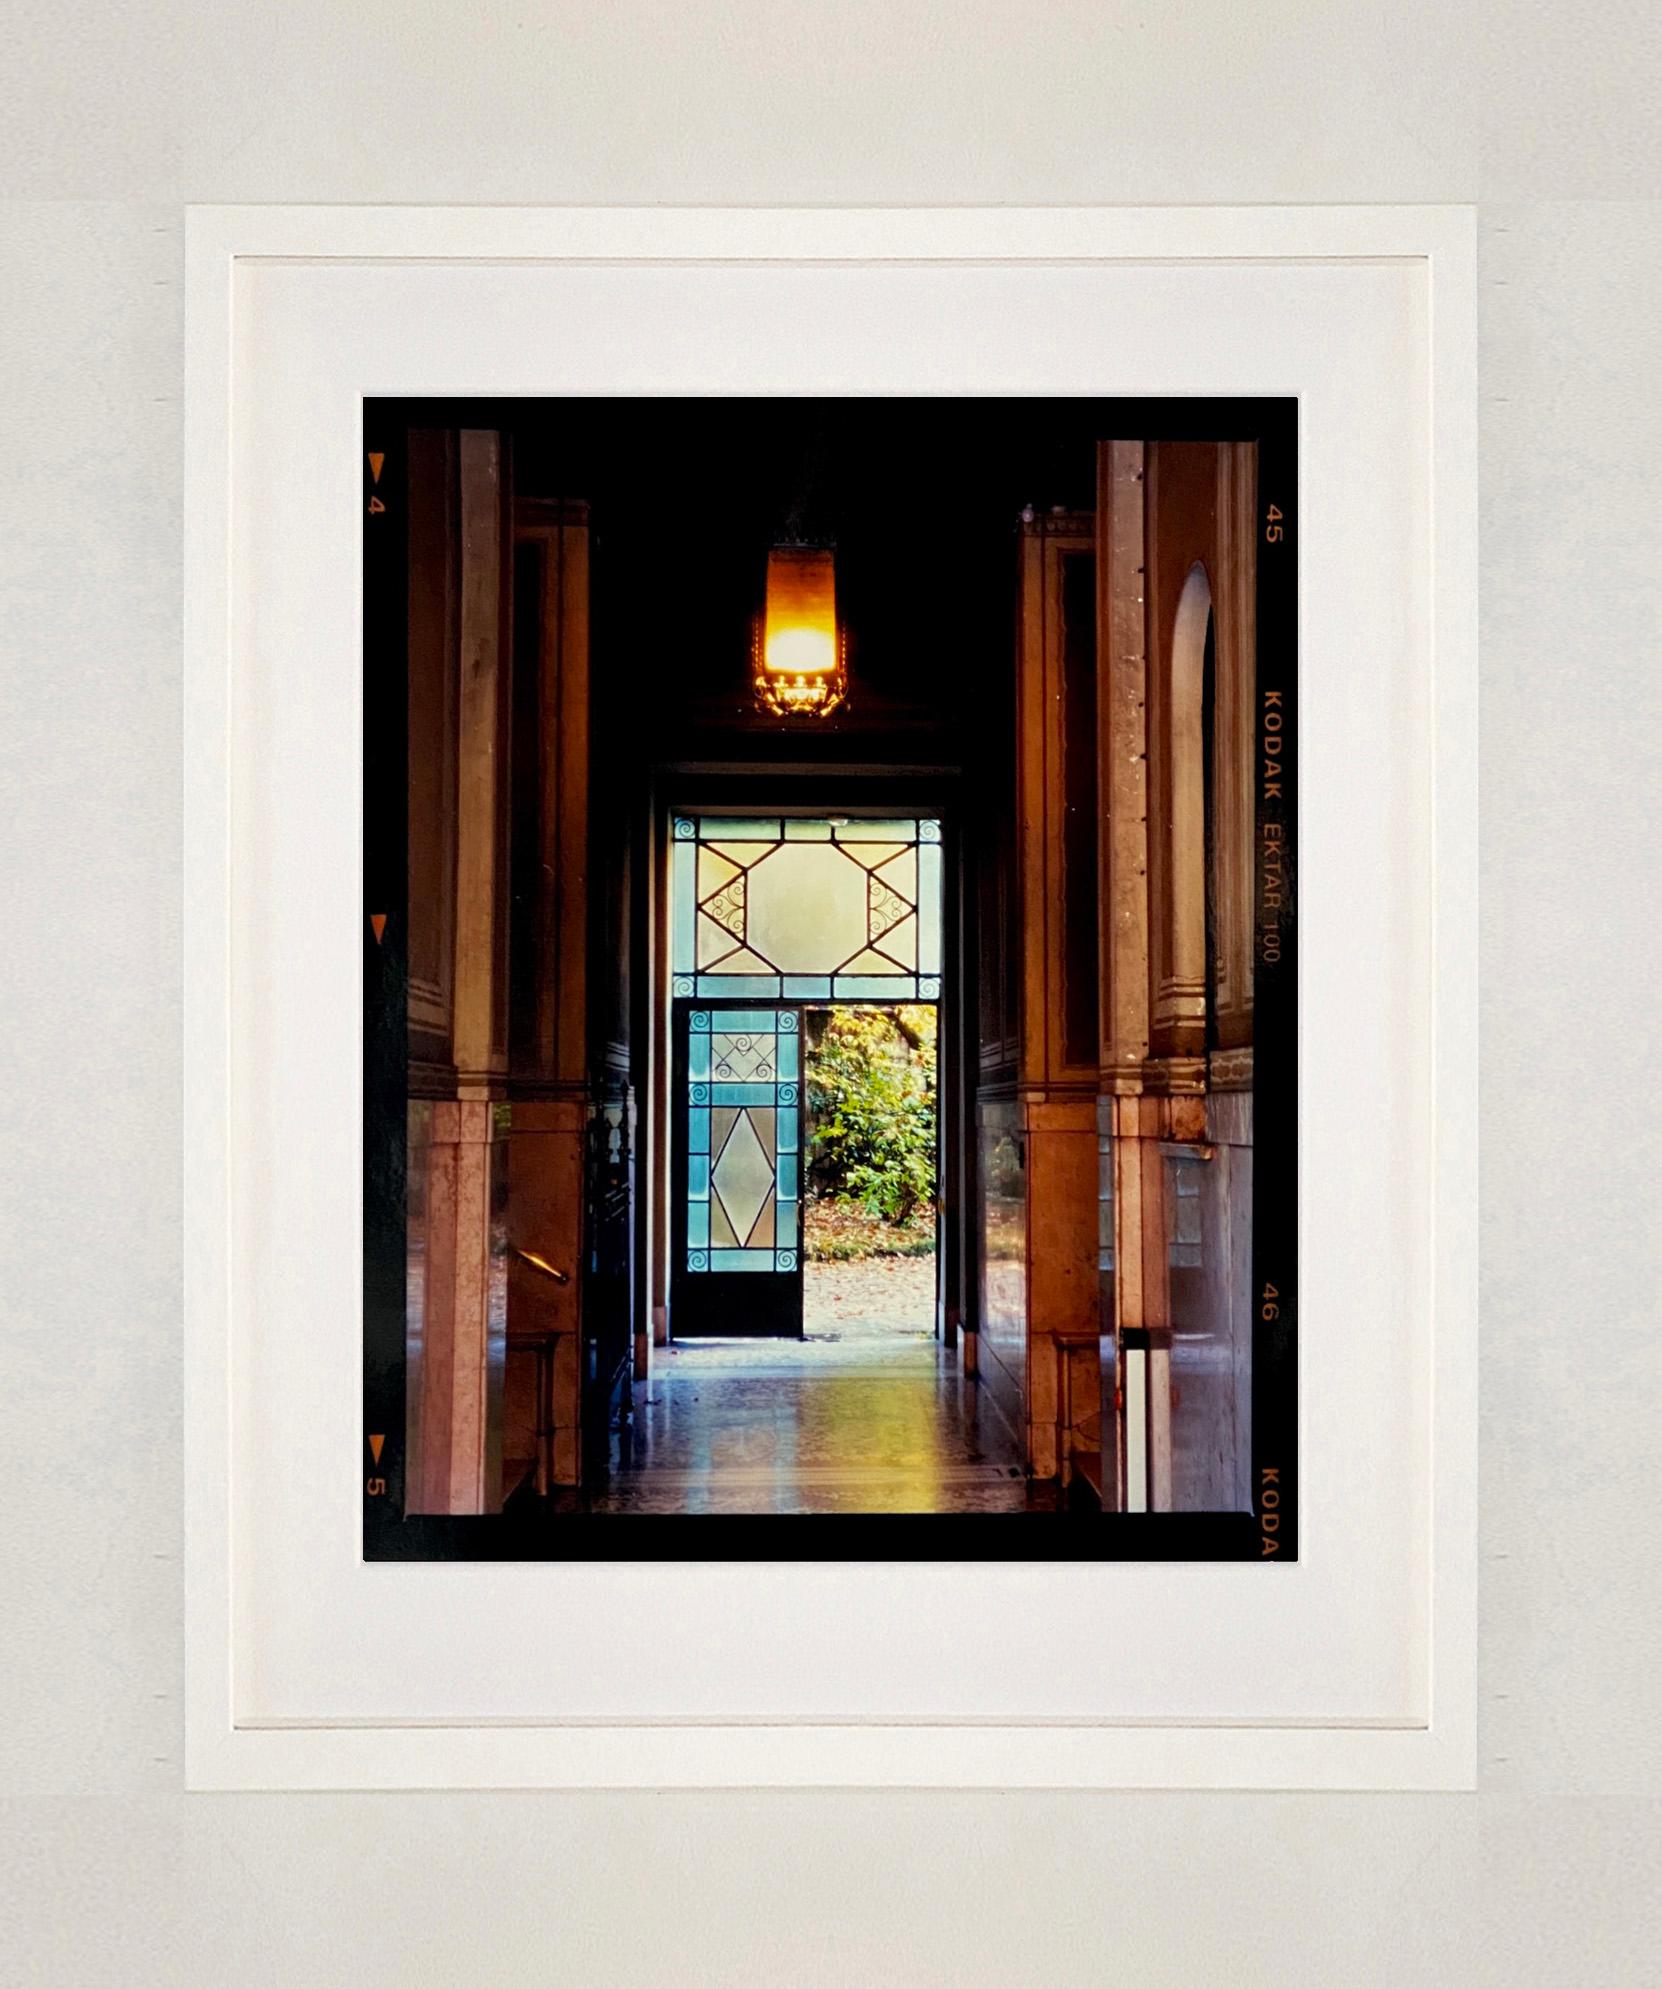 Foyer IV, Mailand - Italienische architektonische Farbfotografie (Zeitgenössisch), Print, von Richard Heeps